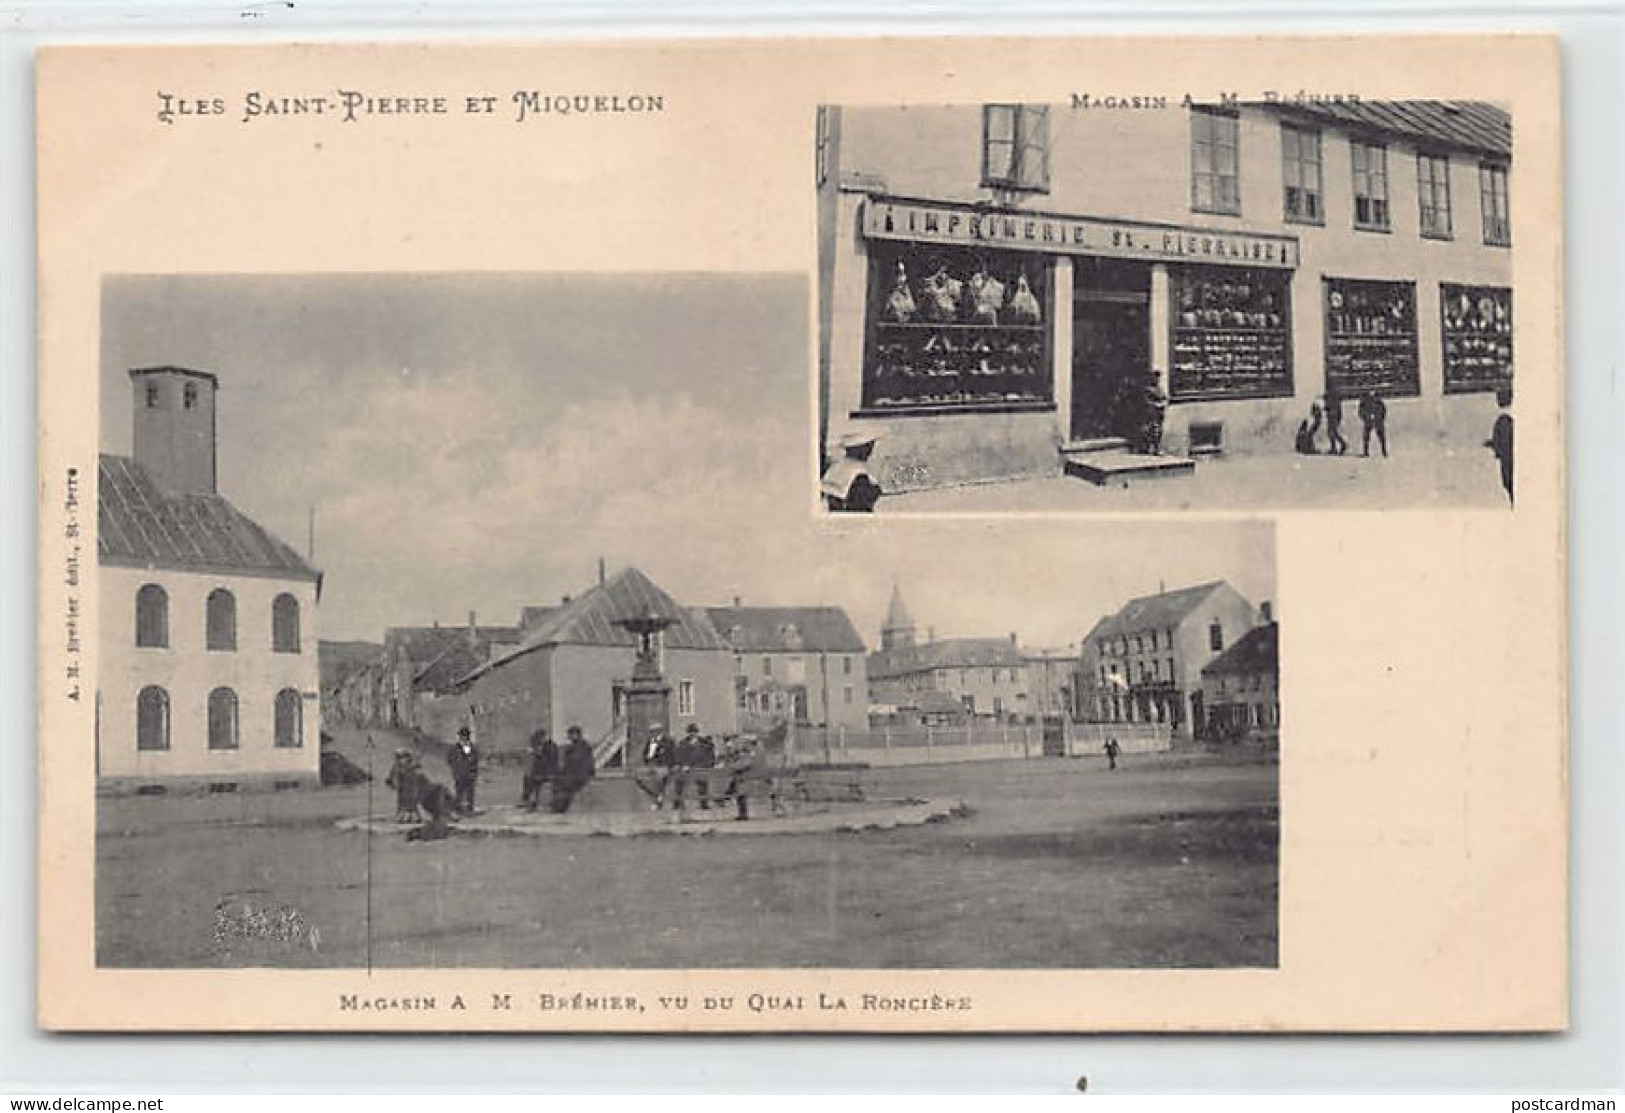 SAINT-PIERRE - Magasin A. M. Brehier, Vu Du Quai De La Roncière - CARTE PUBLICITAIRE - Ed. A. M. Bréhier  - Saint-Pierre En Miquelon